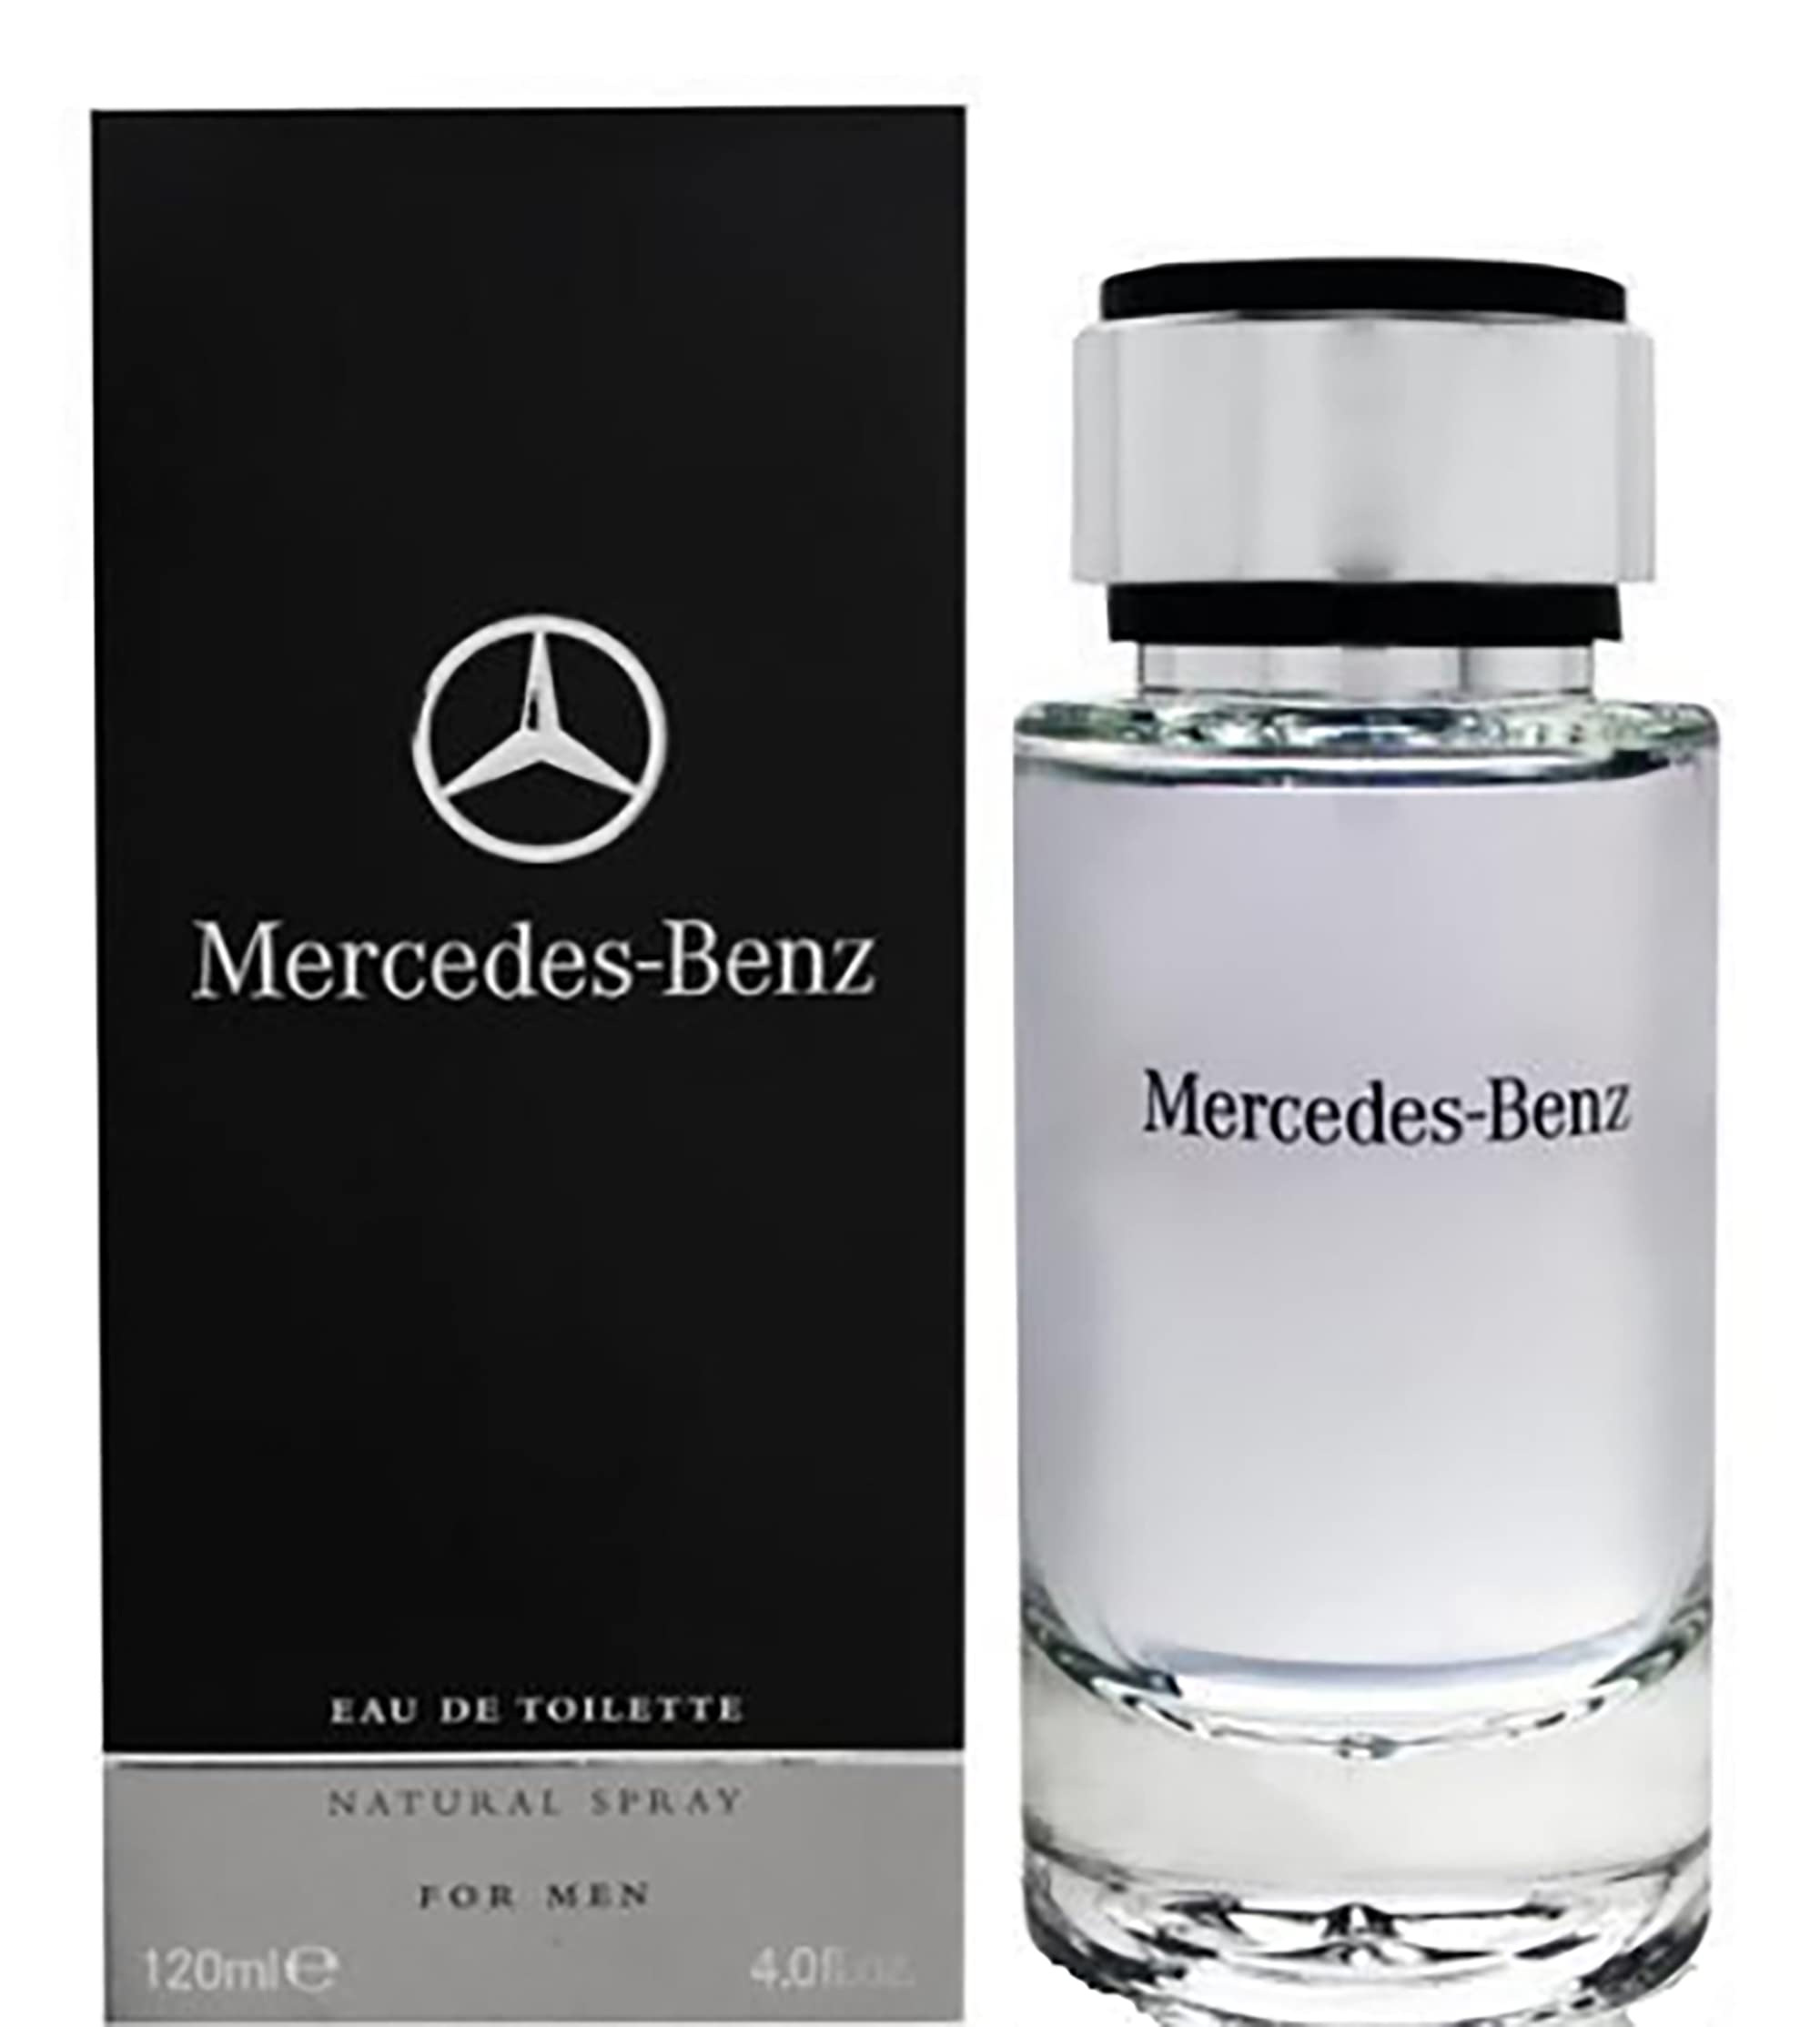 Mercedes-Benz For Men Eau de Toilette Natural Spray 120 ml